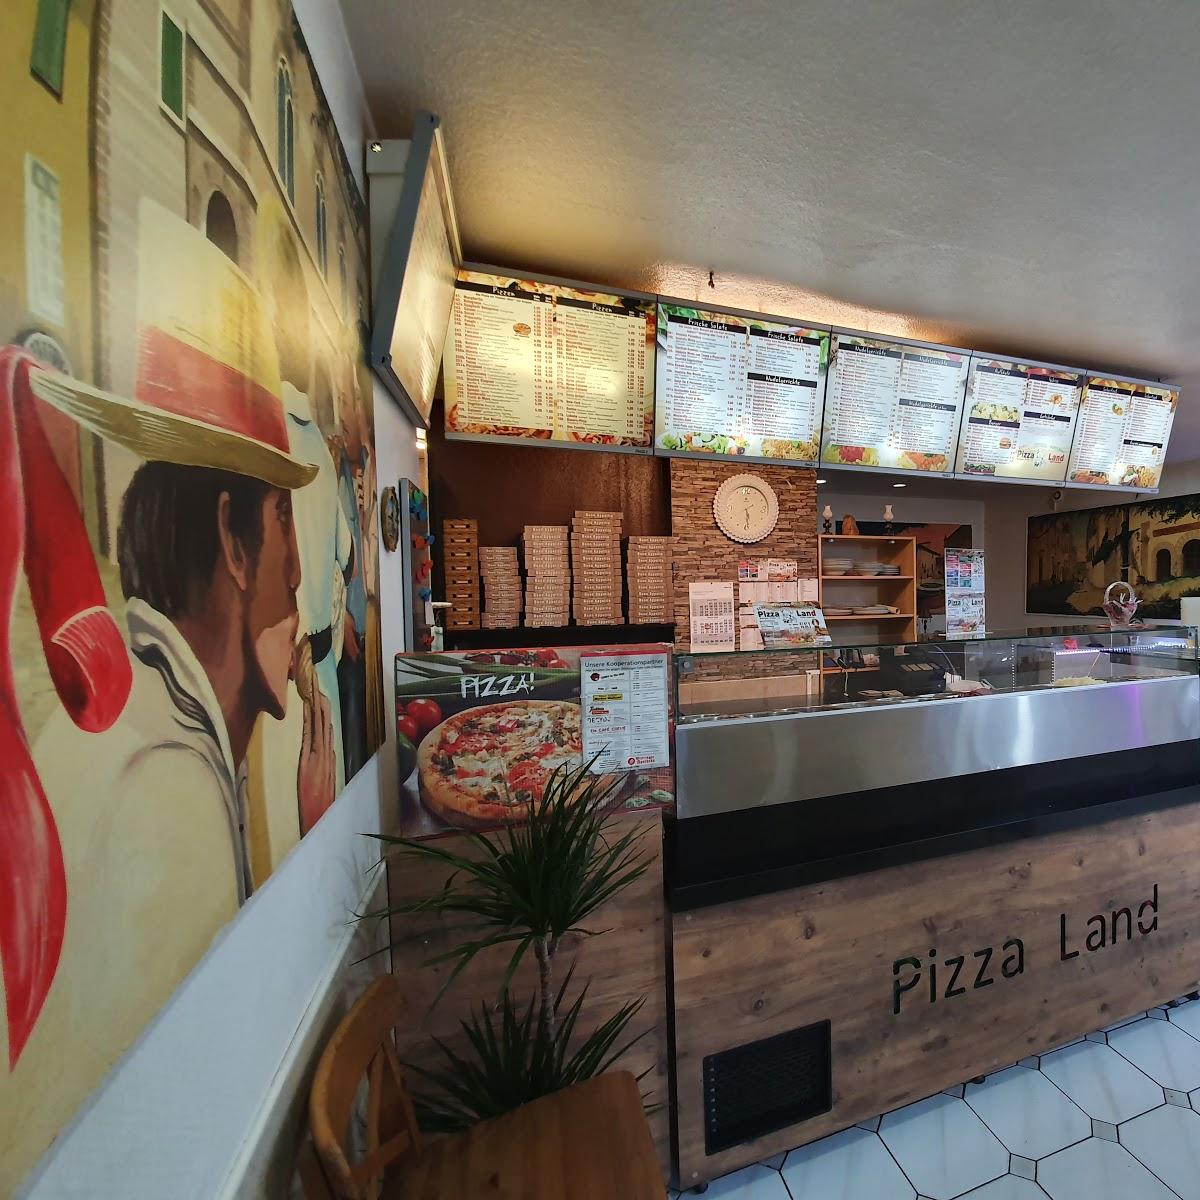 Restaurant "Pizzaland" in  Gladbeck